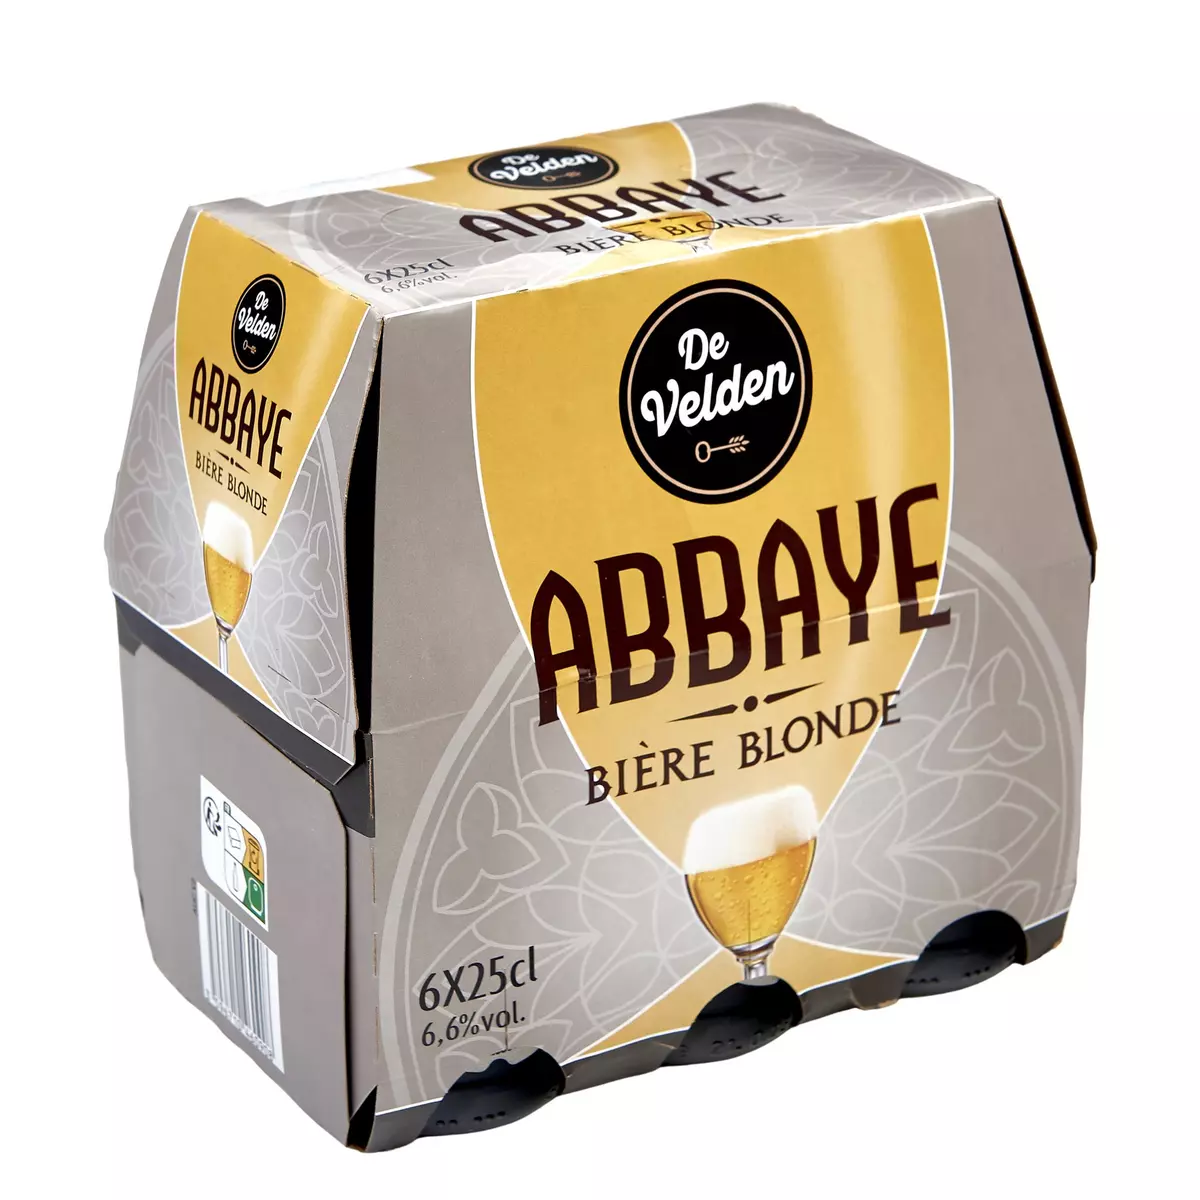 DE VELDEN Bière blonde d'abbaye 6,6% bouteilles 6x25cl